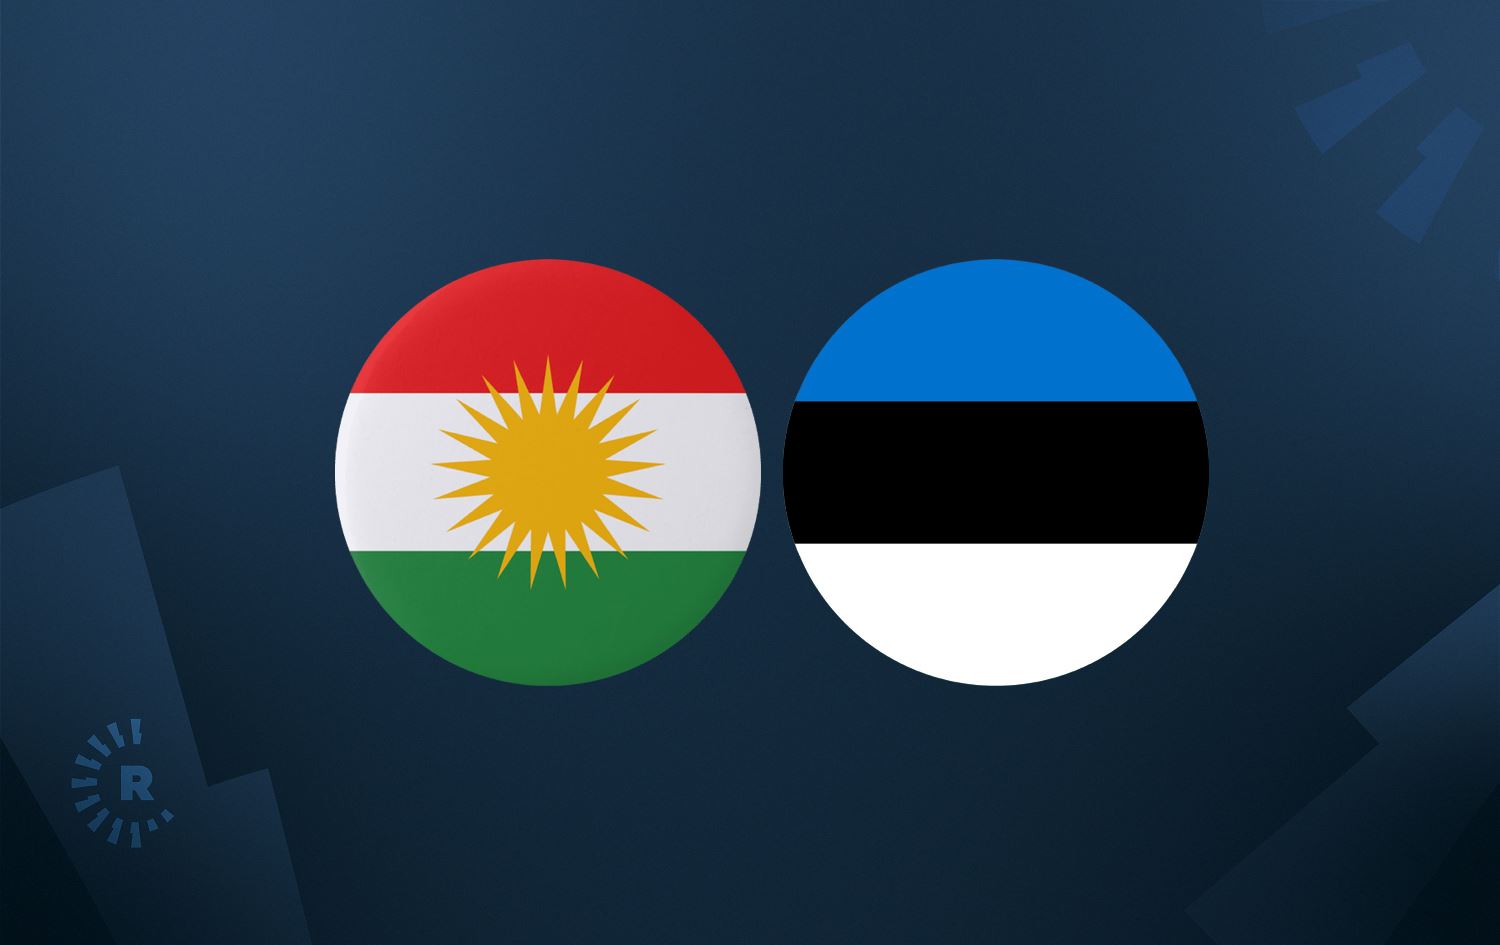 Estonia calls Kurdistan Region its 'most